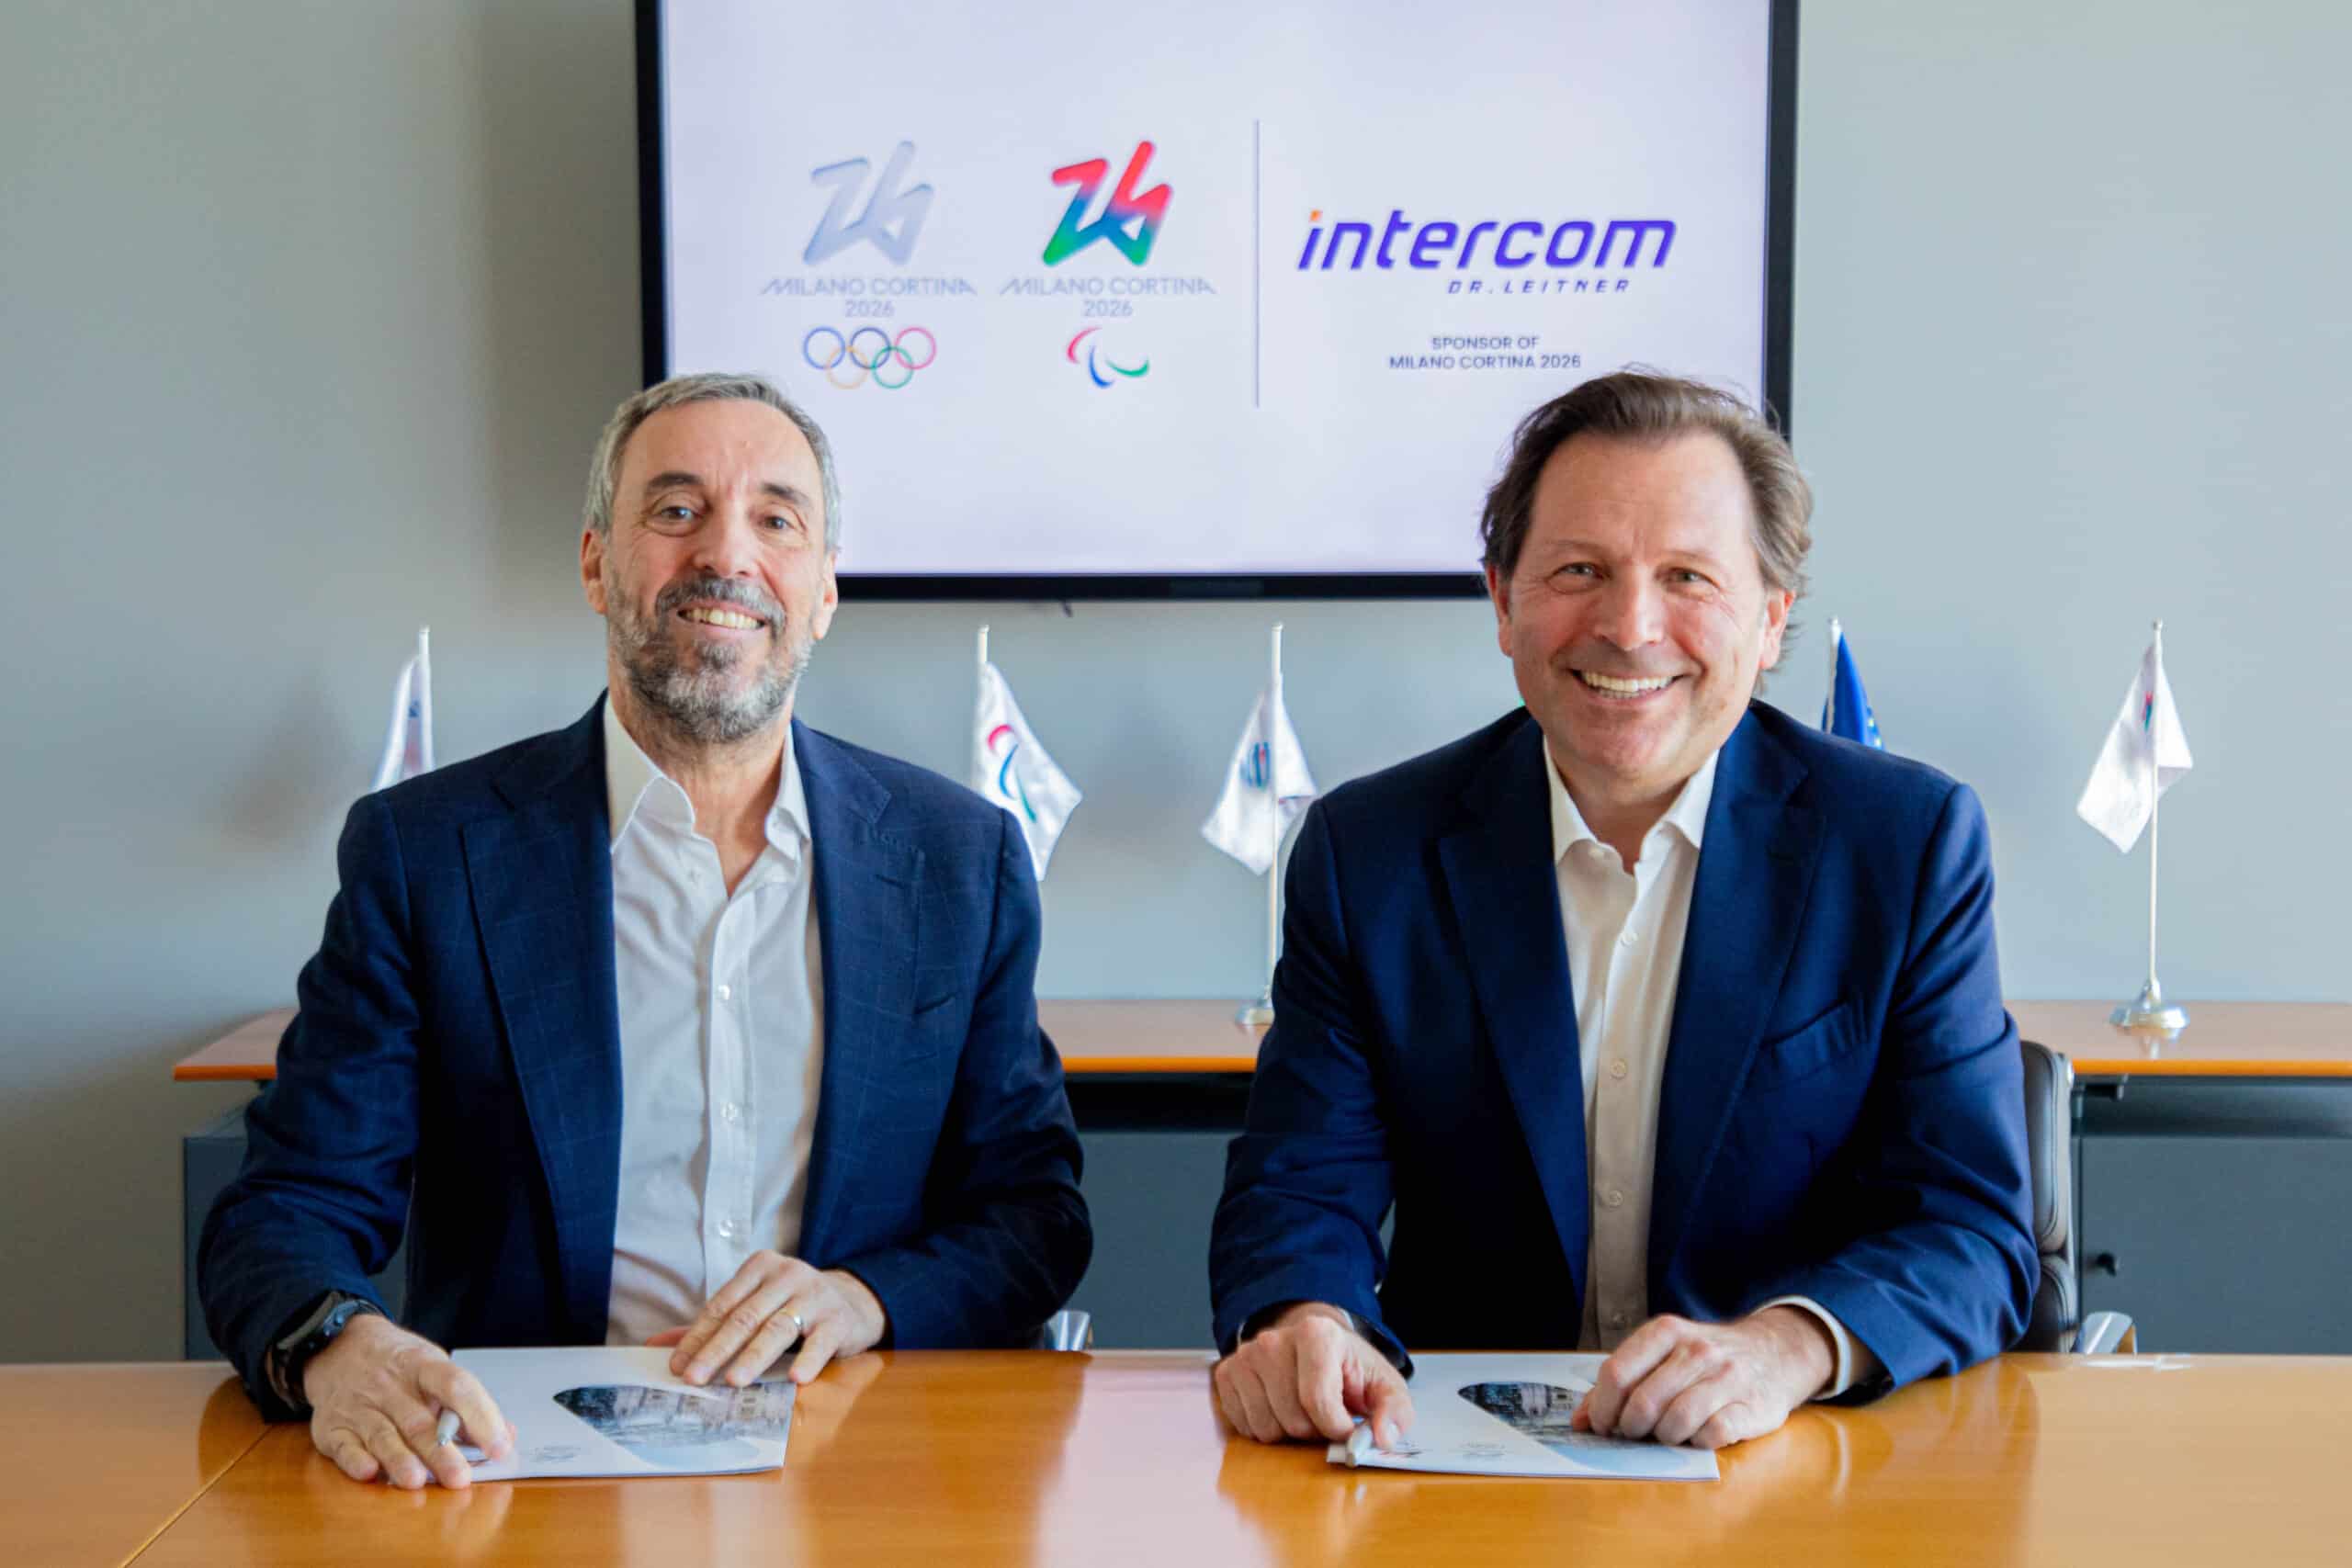 Intercom Dr. Leitner è sponsor ufficiale delle Olimpiadi Invernali Milano Cortina 2026